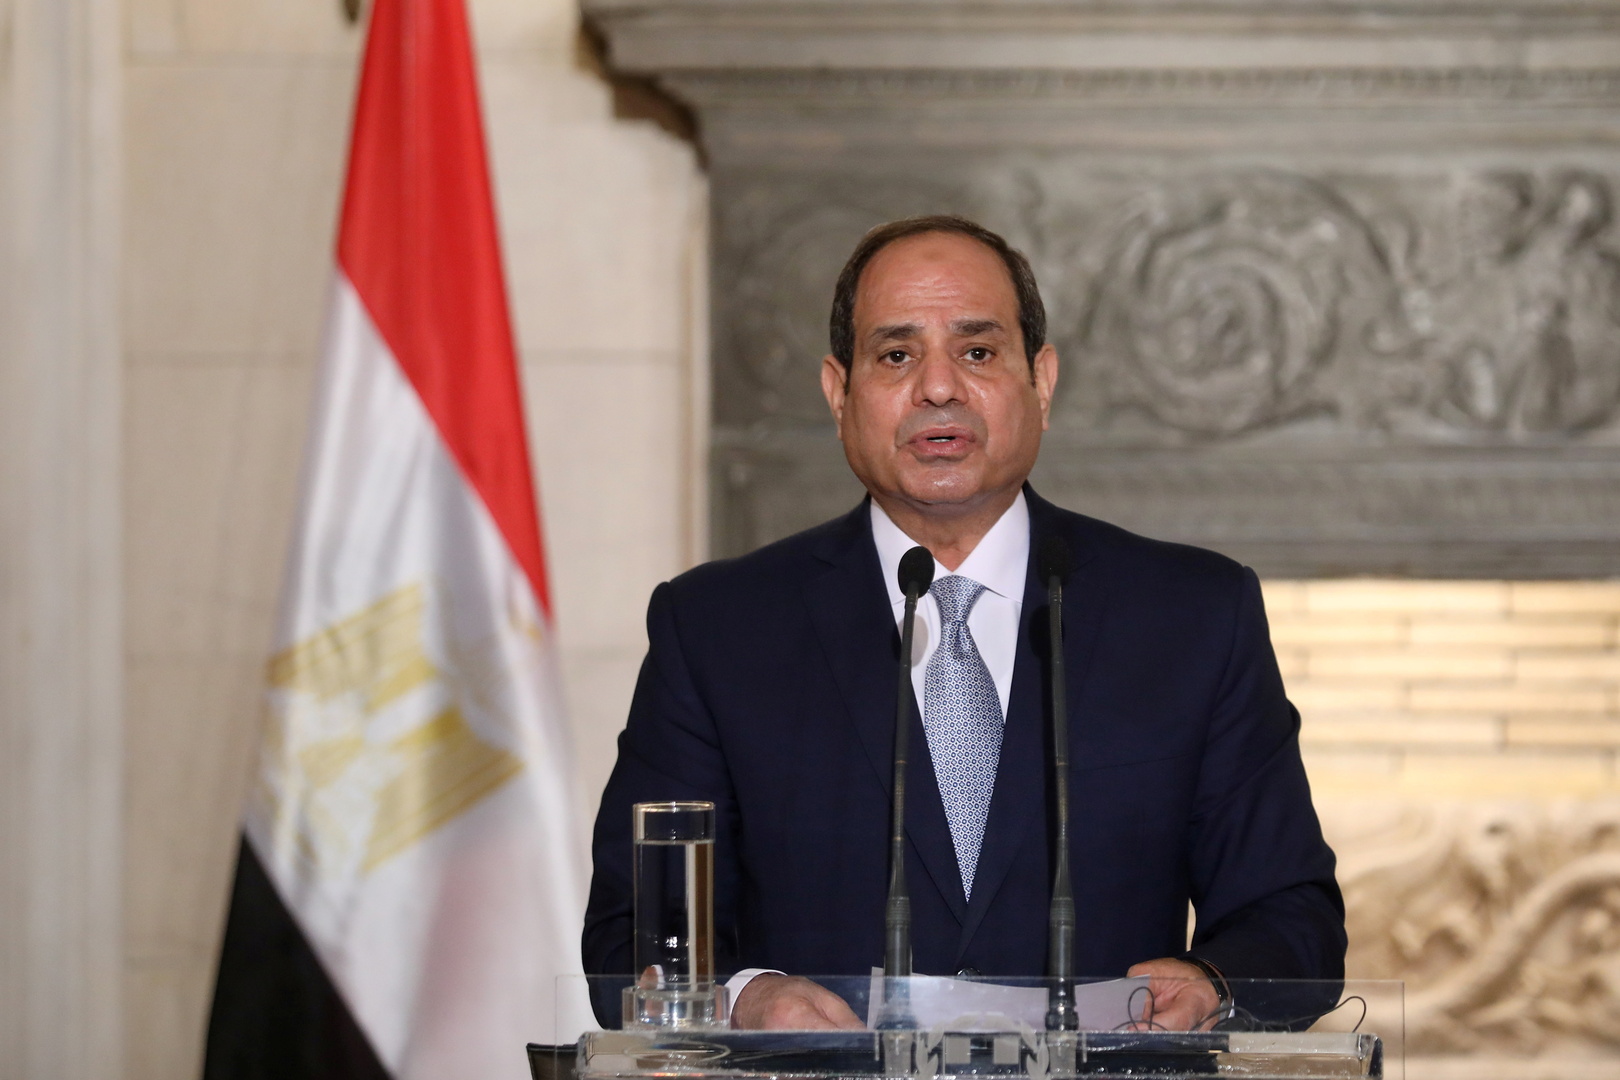 تعليقات مصرية عن أهمية الاتفاقية العسكرية بين مصر والسودان وزيارة السيسي المرتقبة للخرطوم